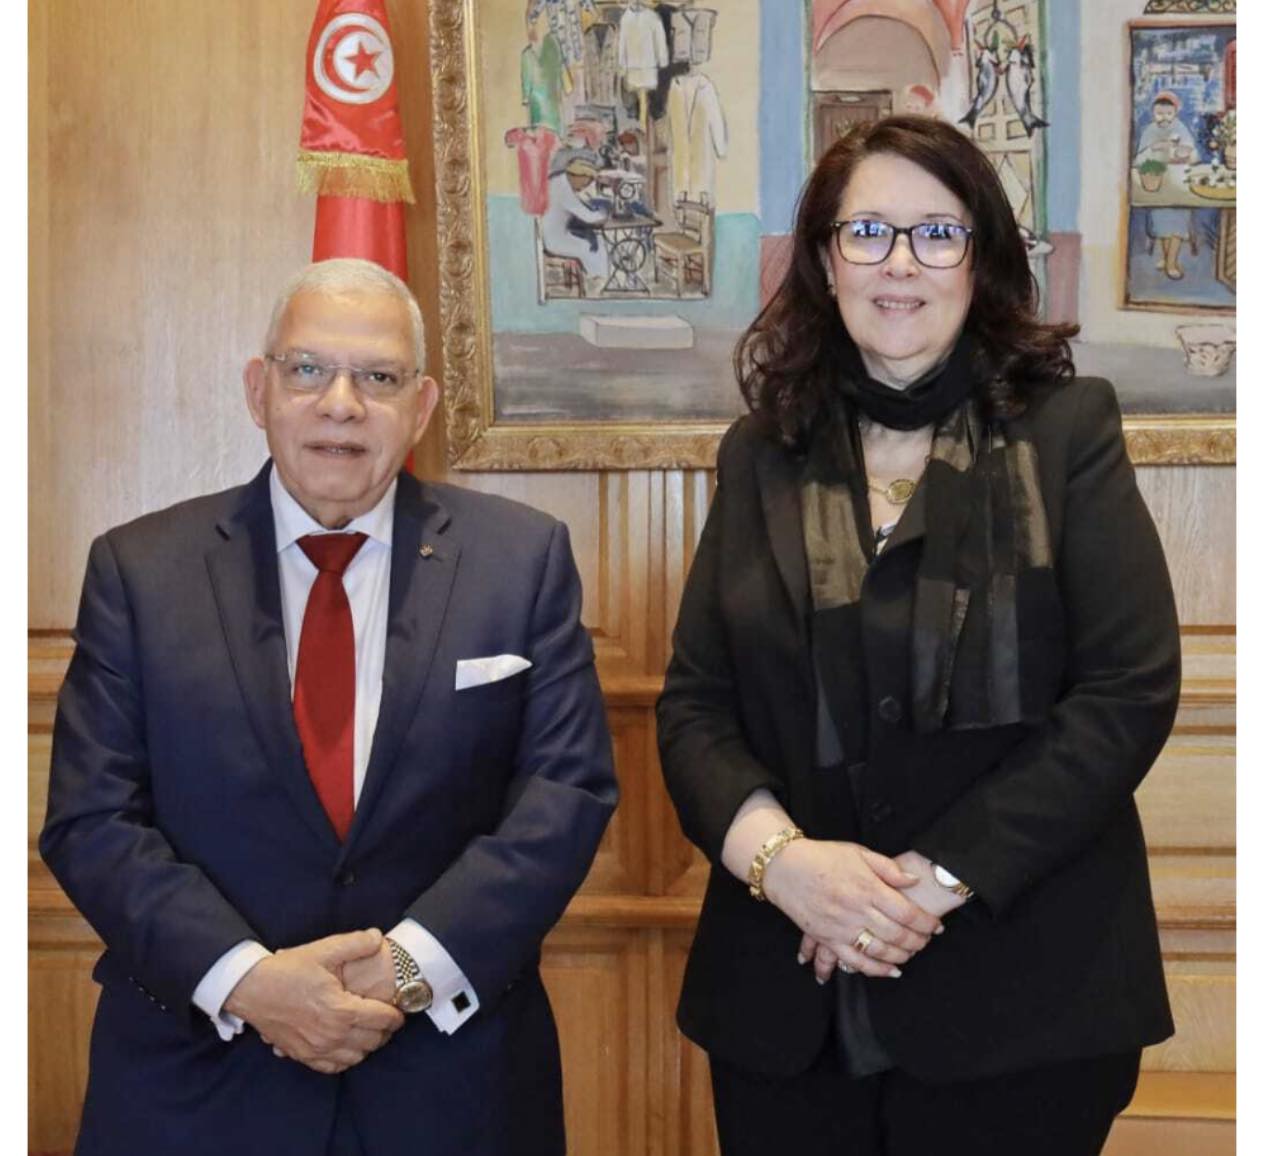 رئيس اتحاد الناشرين العرب يلتقي وزيرة الثقافة التونسية على هامش معرض الكتاب صور بوابة الأهرام